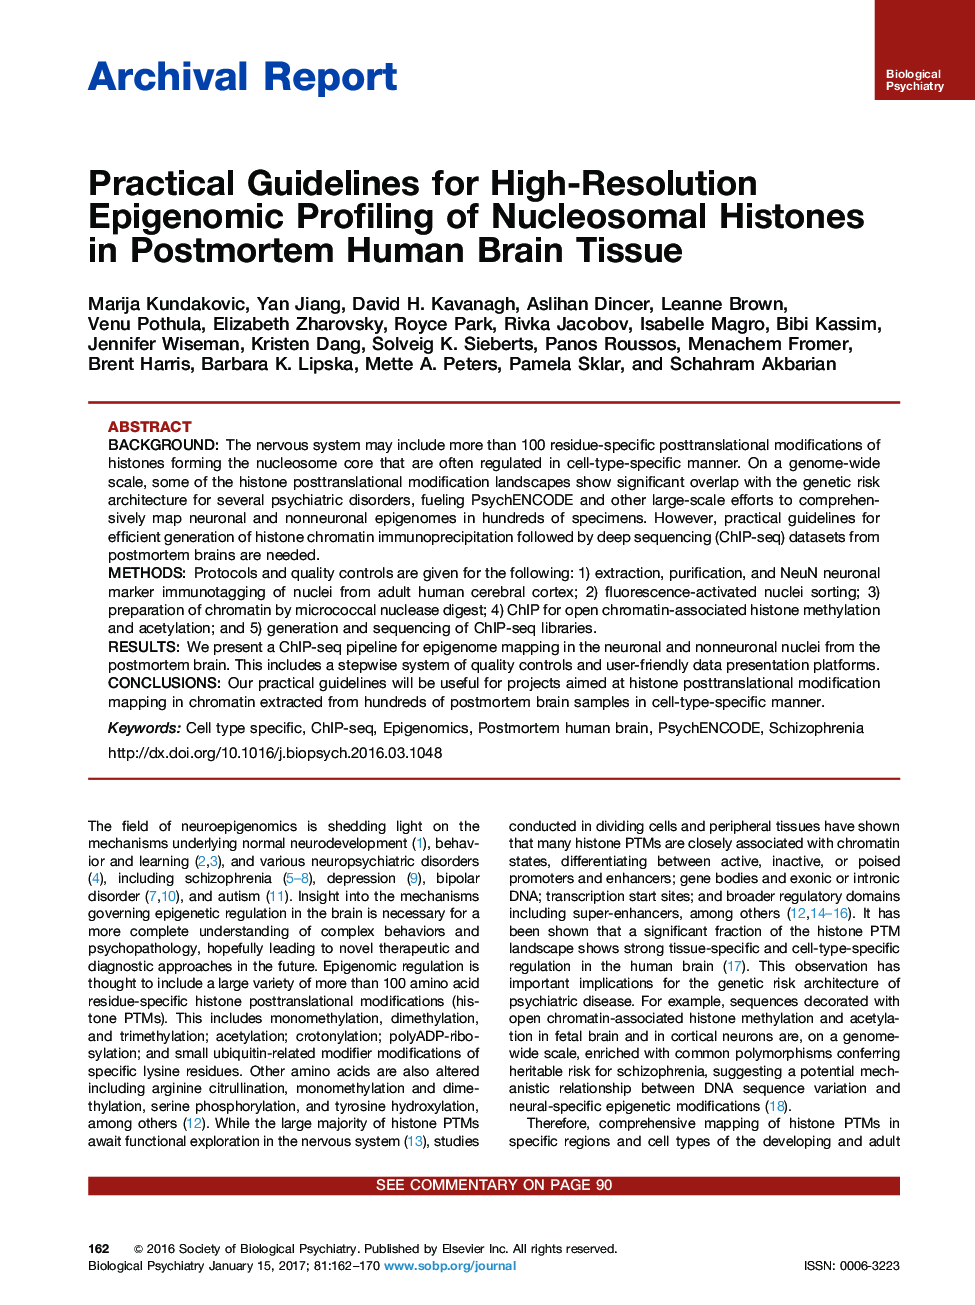 گزارش بایگانی راهنمای راهبردی برای استخراج مقادیر زیاد پروتئین نوکلئیک هیستون های هسته ای در بافت مغز پس از قاعدگی 